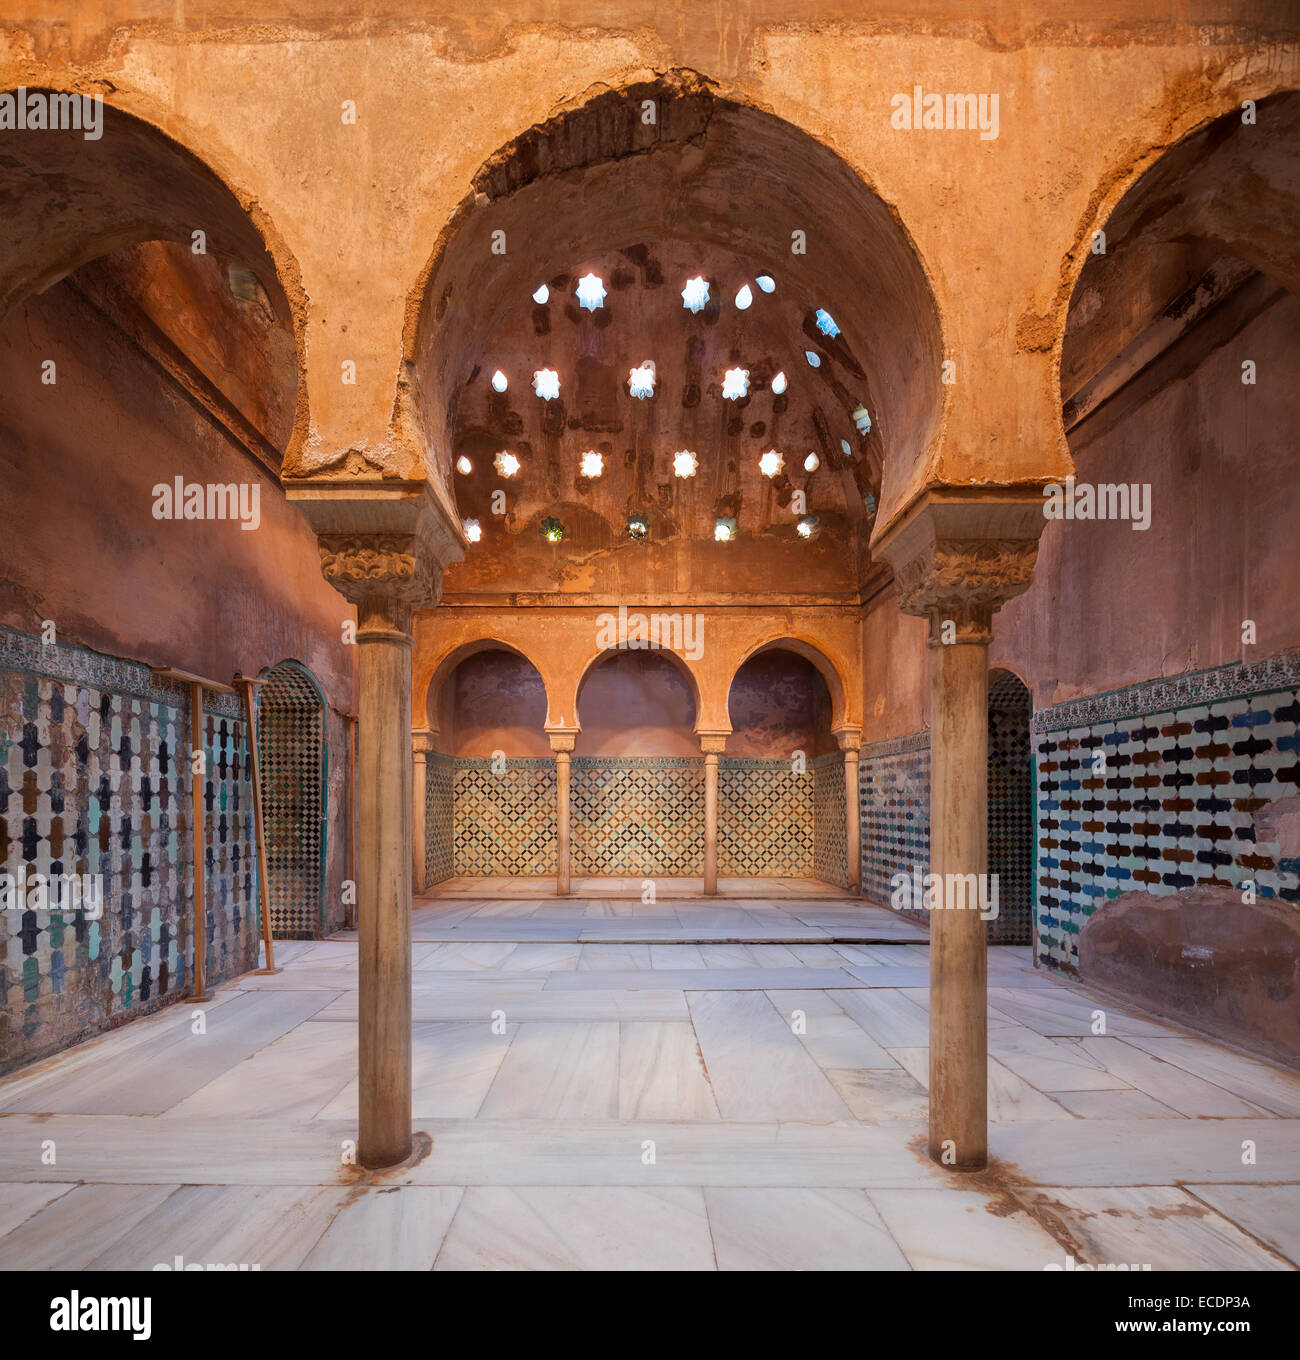 Hammam, Hammam, Bains Arabes dans l'Alhambra Palace Château Grenade Espagne. Banque D'Images